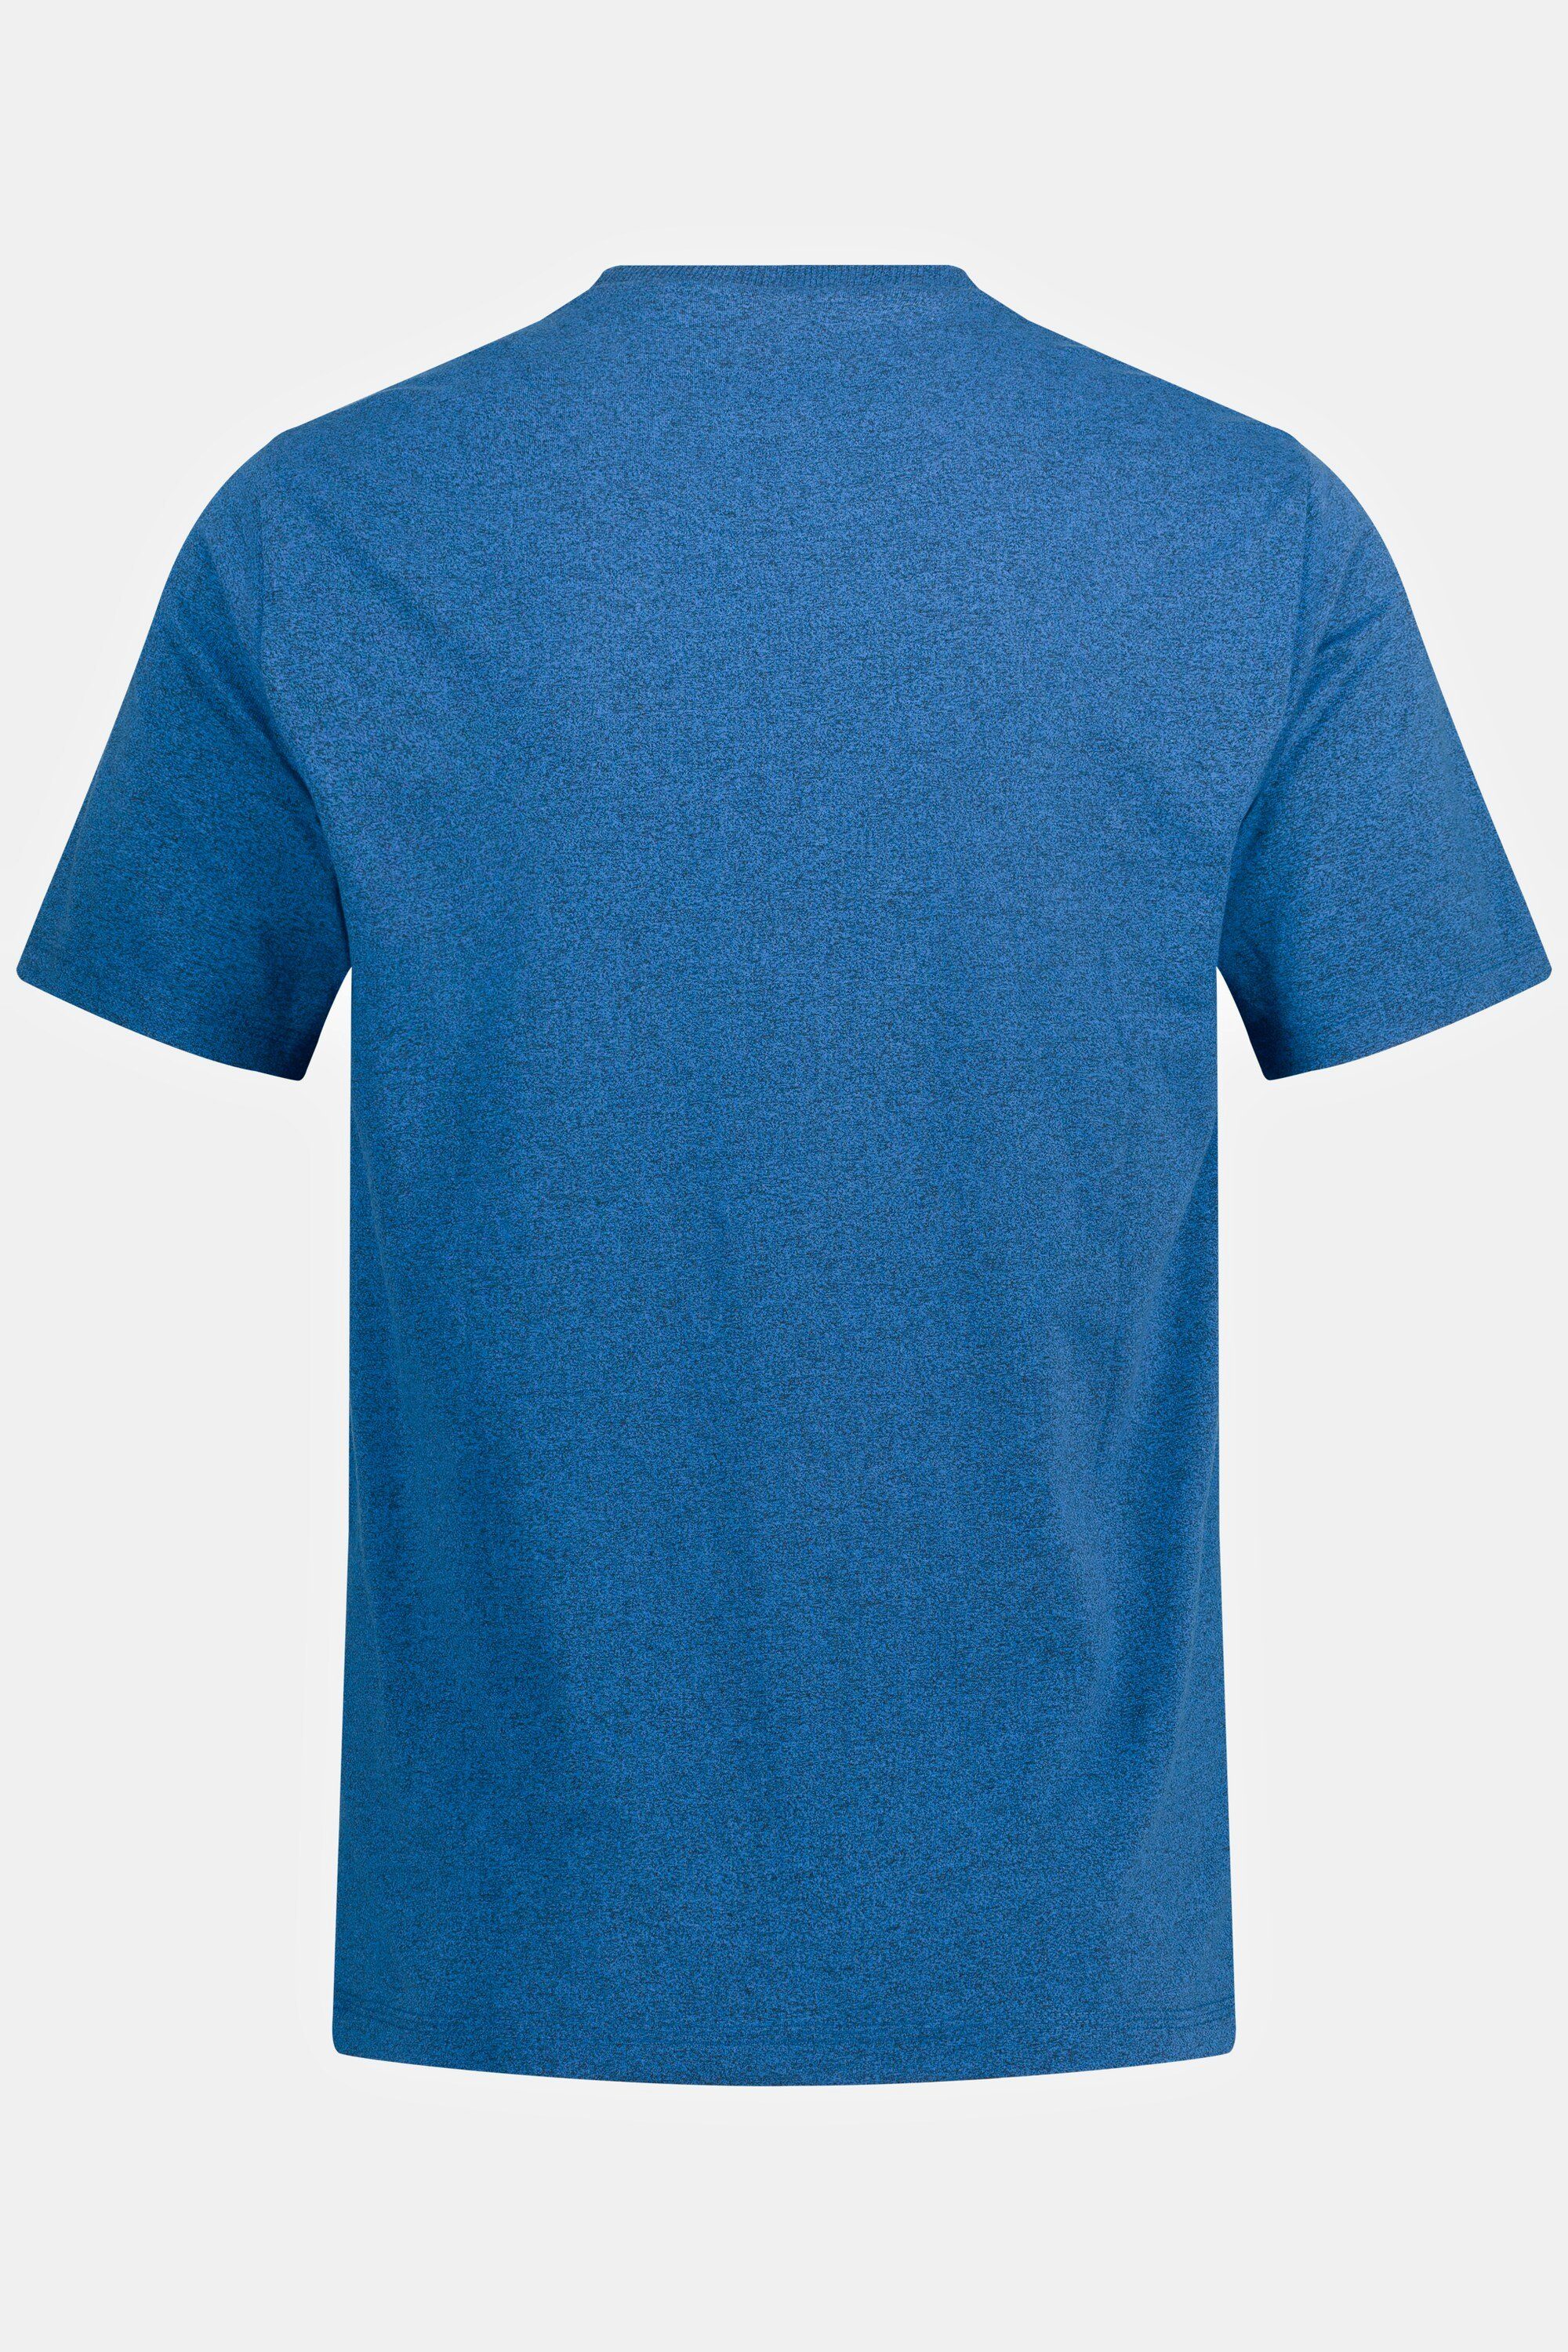 JP1880 T-Shirt T-Shirt Rundhals mittelblau Brusttasche Halbarm